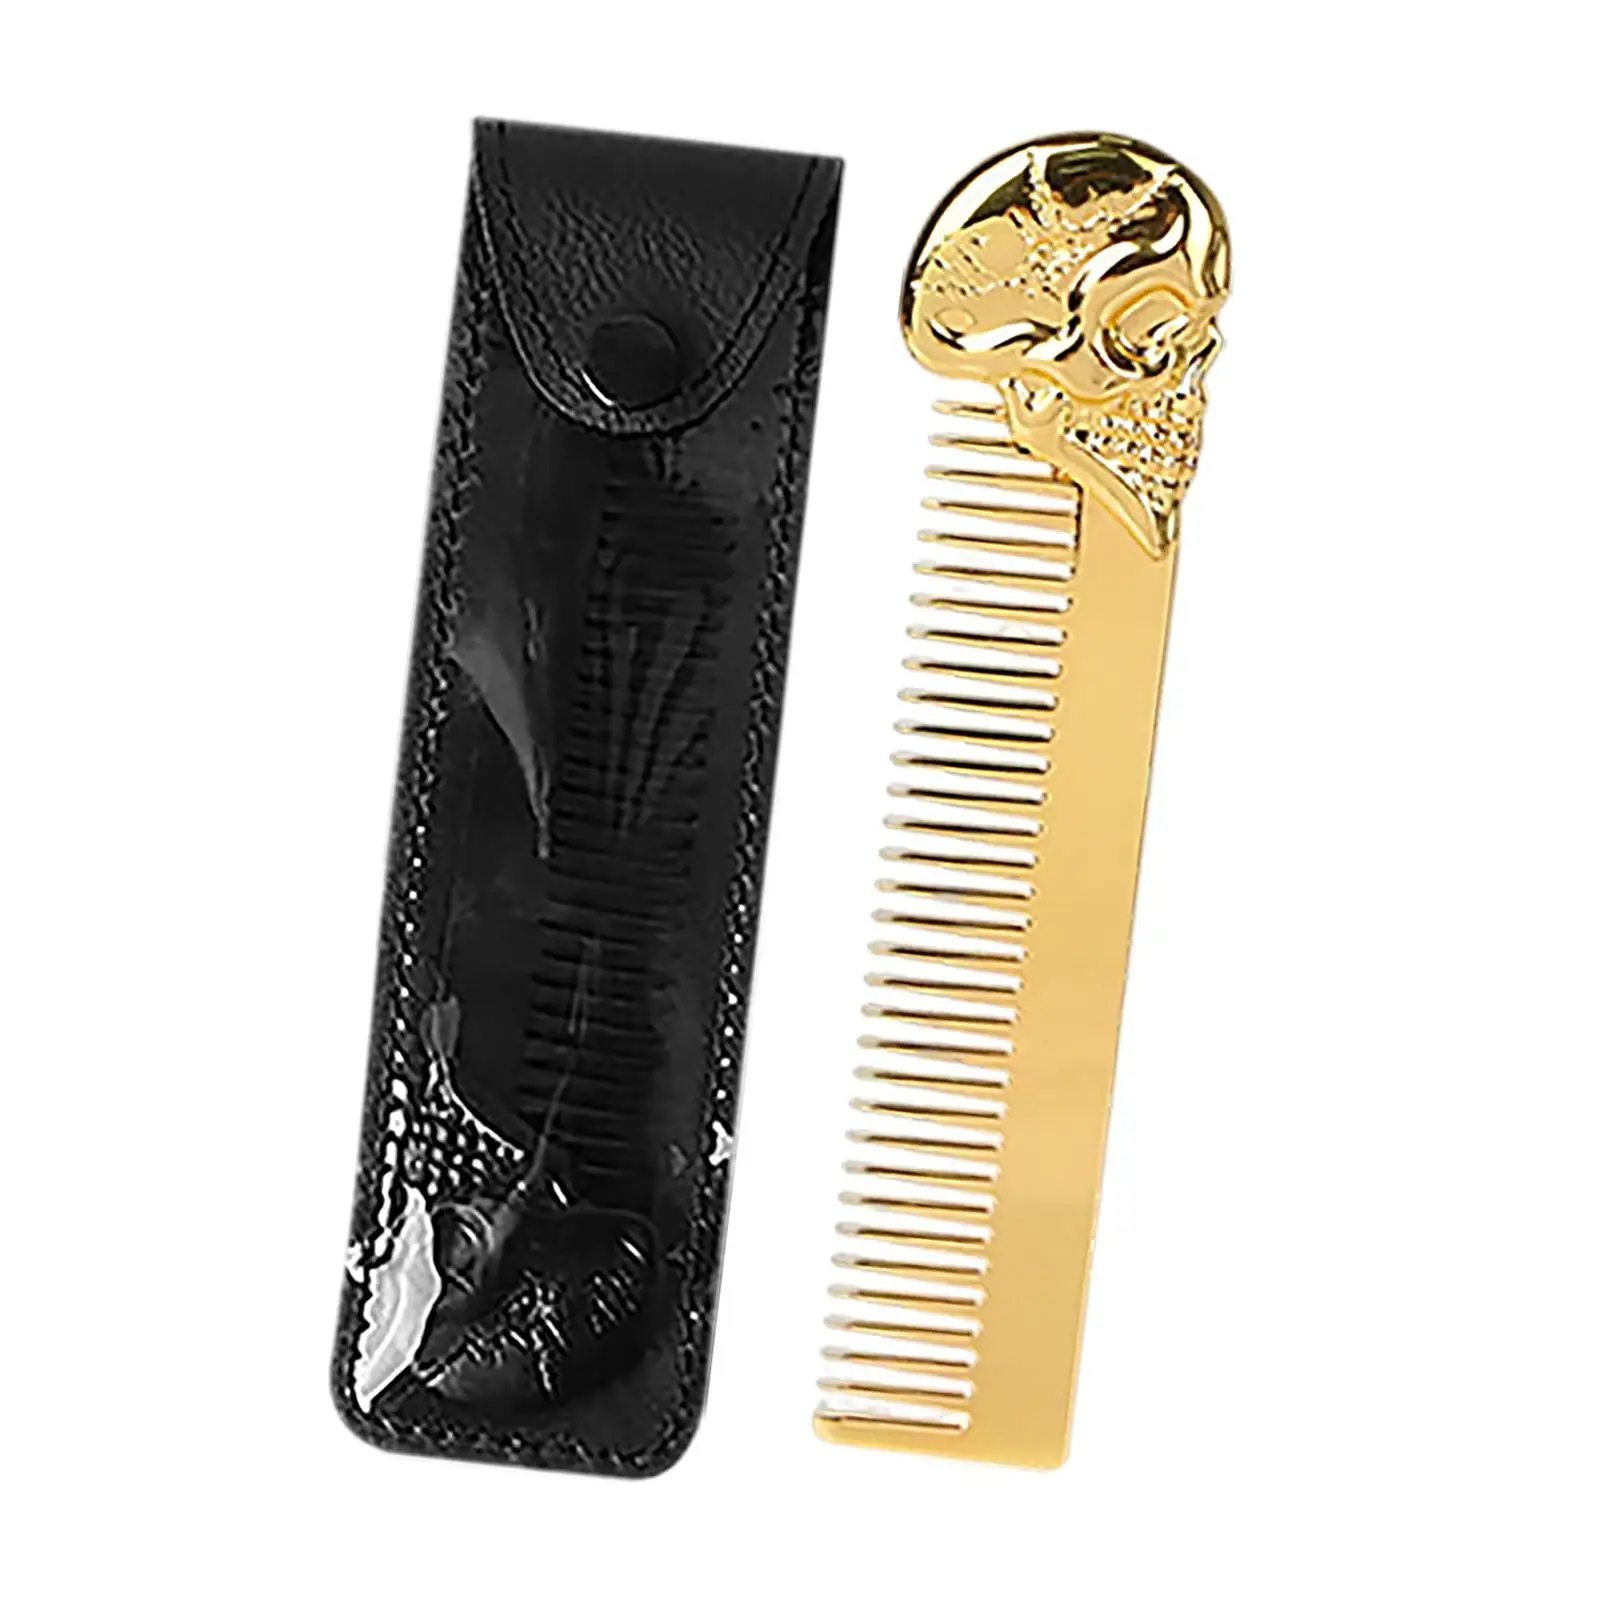 Comb for Men Metal Pocket Comb Hairdressing Barber